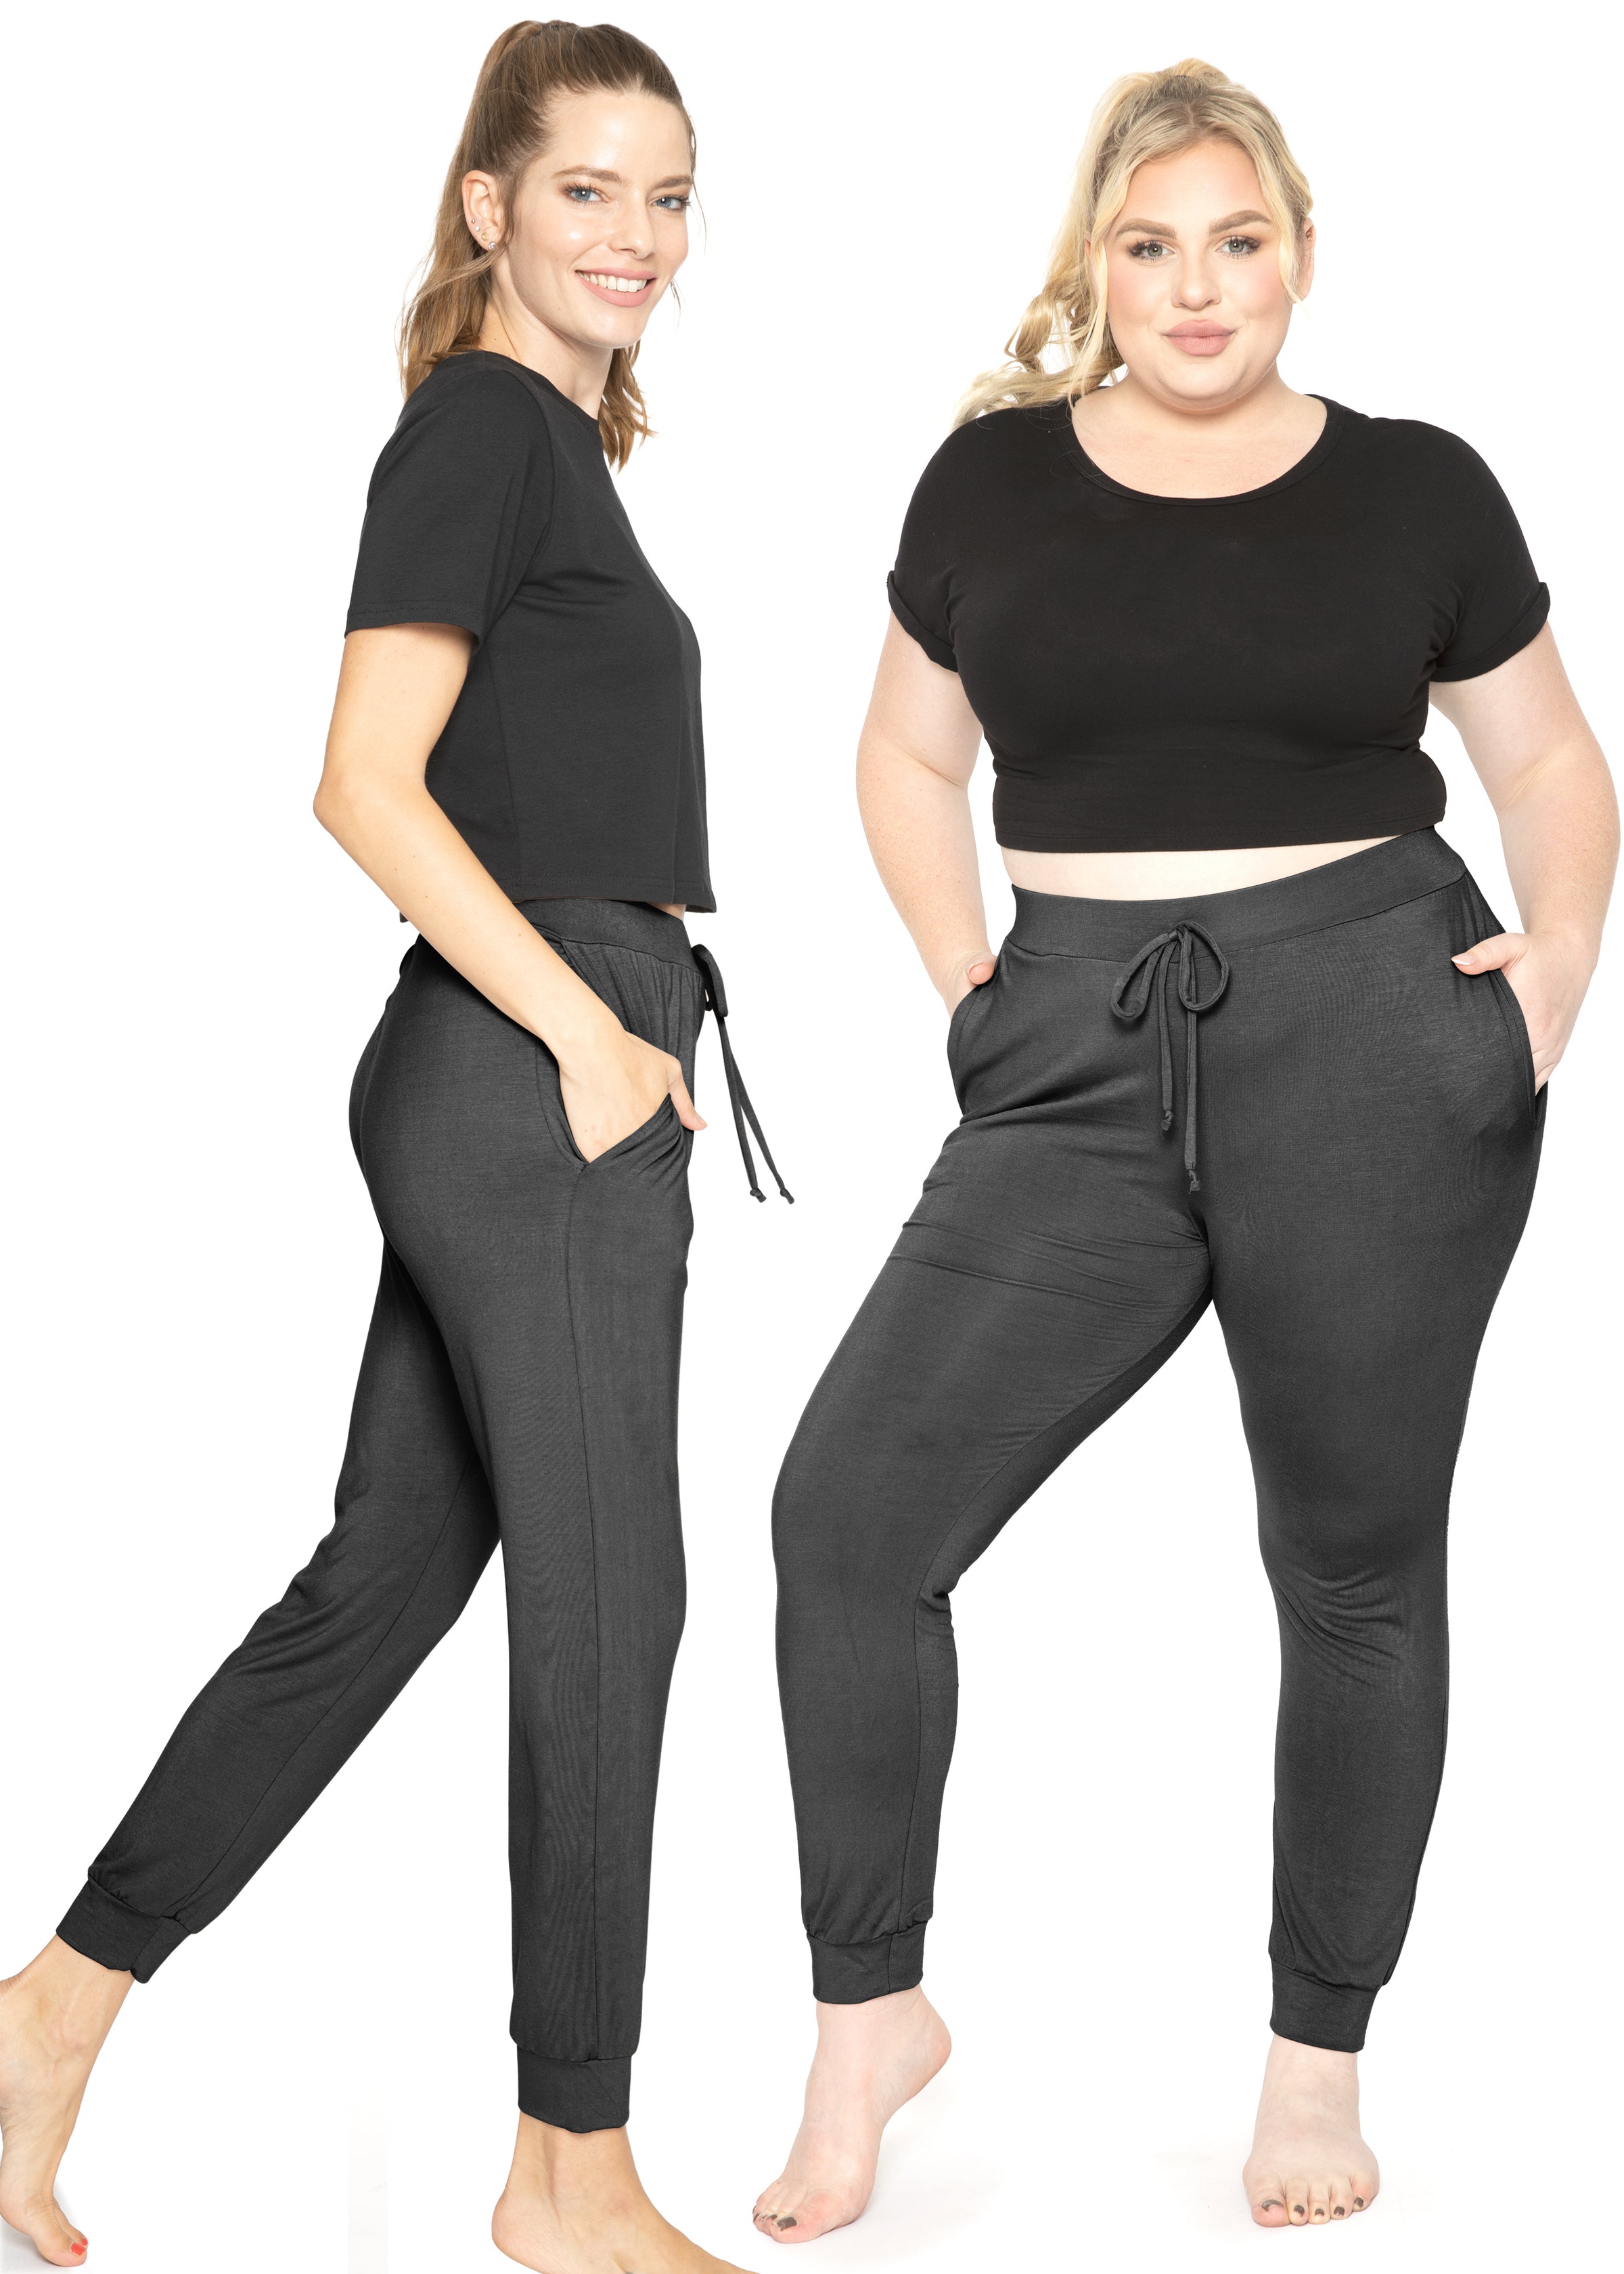 Lazy Pants Women's Sweatpants / Black with White Logo / Women's